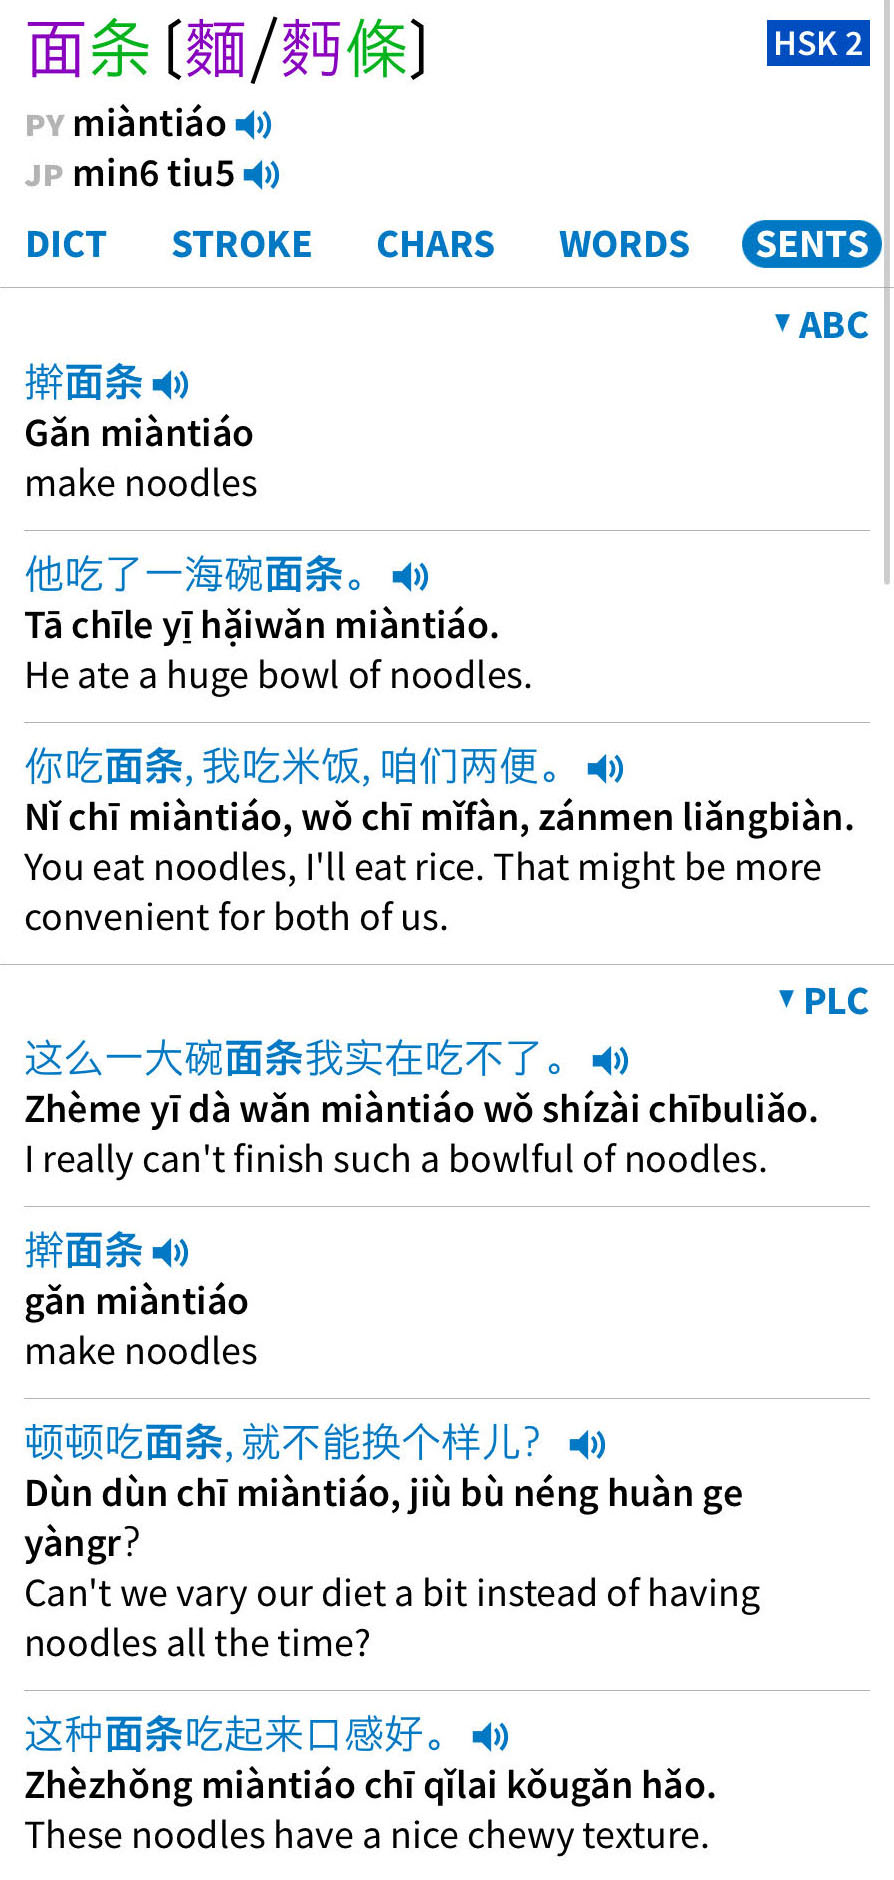 desktop chinese to english translator app